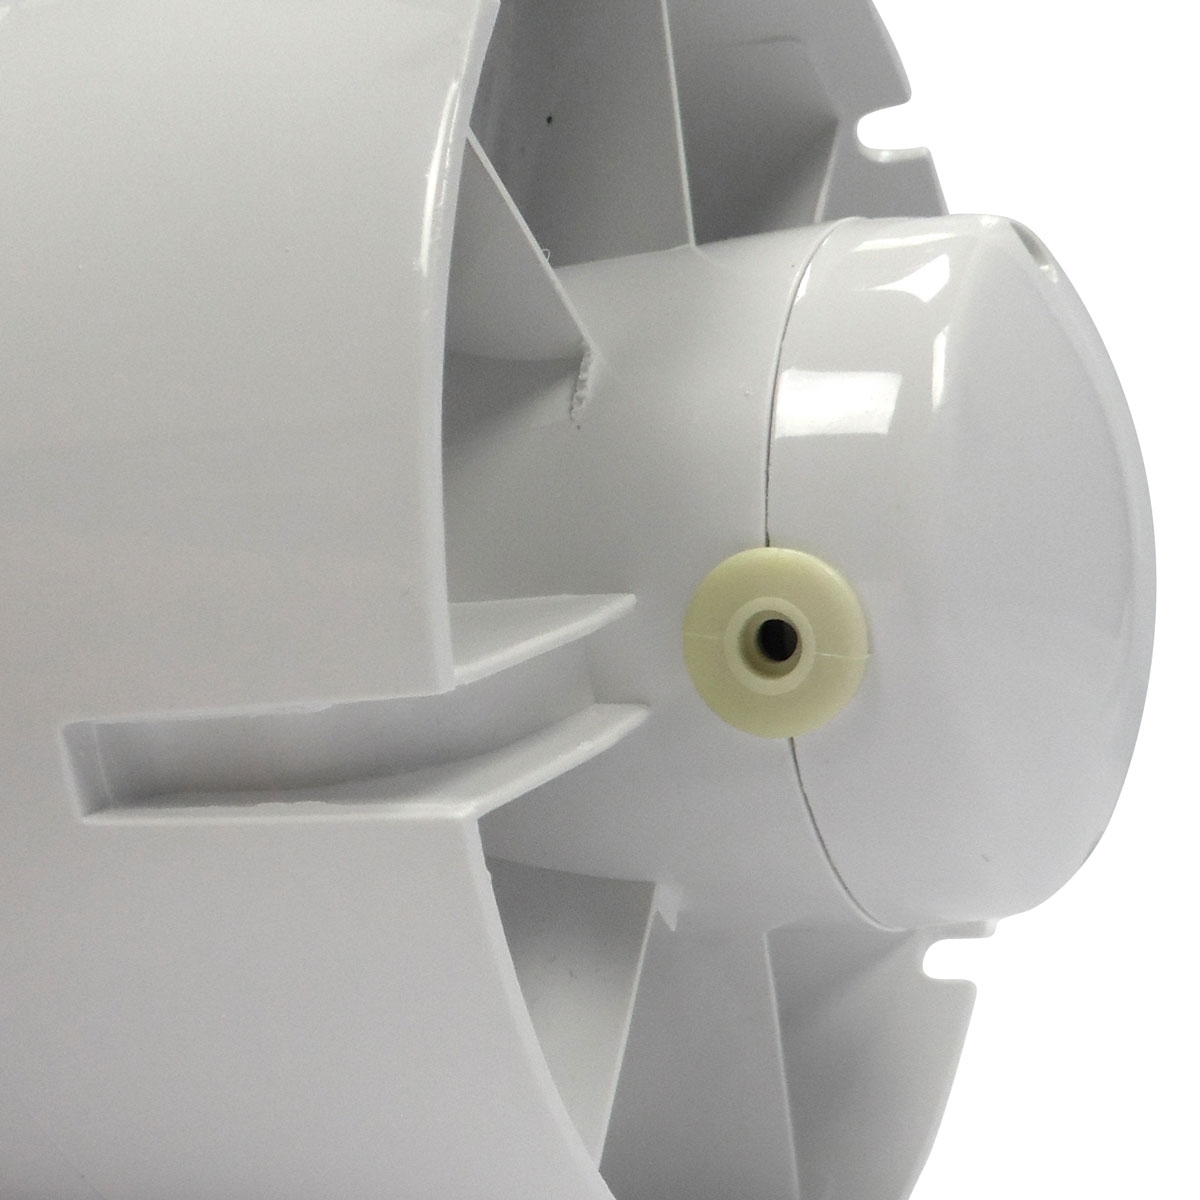 Ventilateurs 2 x 107m3/h - apport et extraction d'air diam 100mm